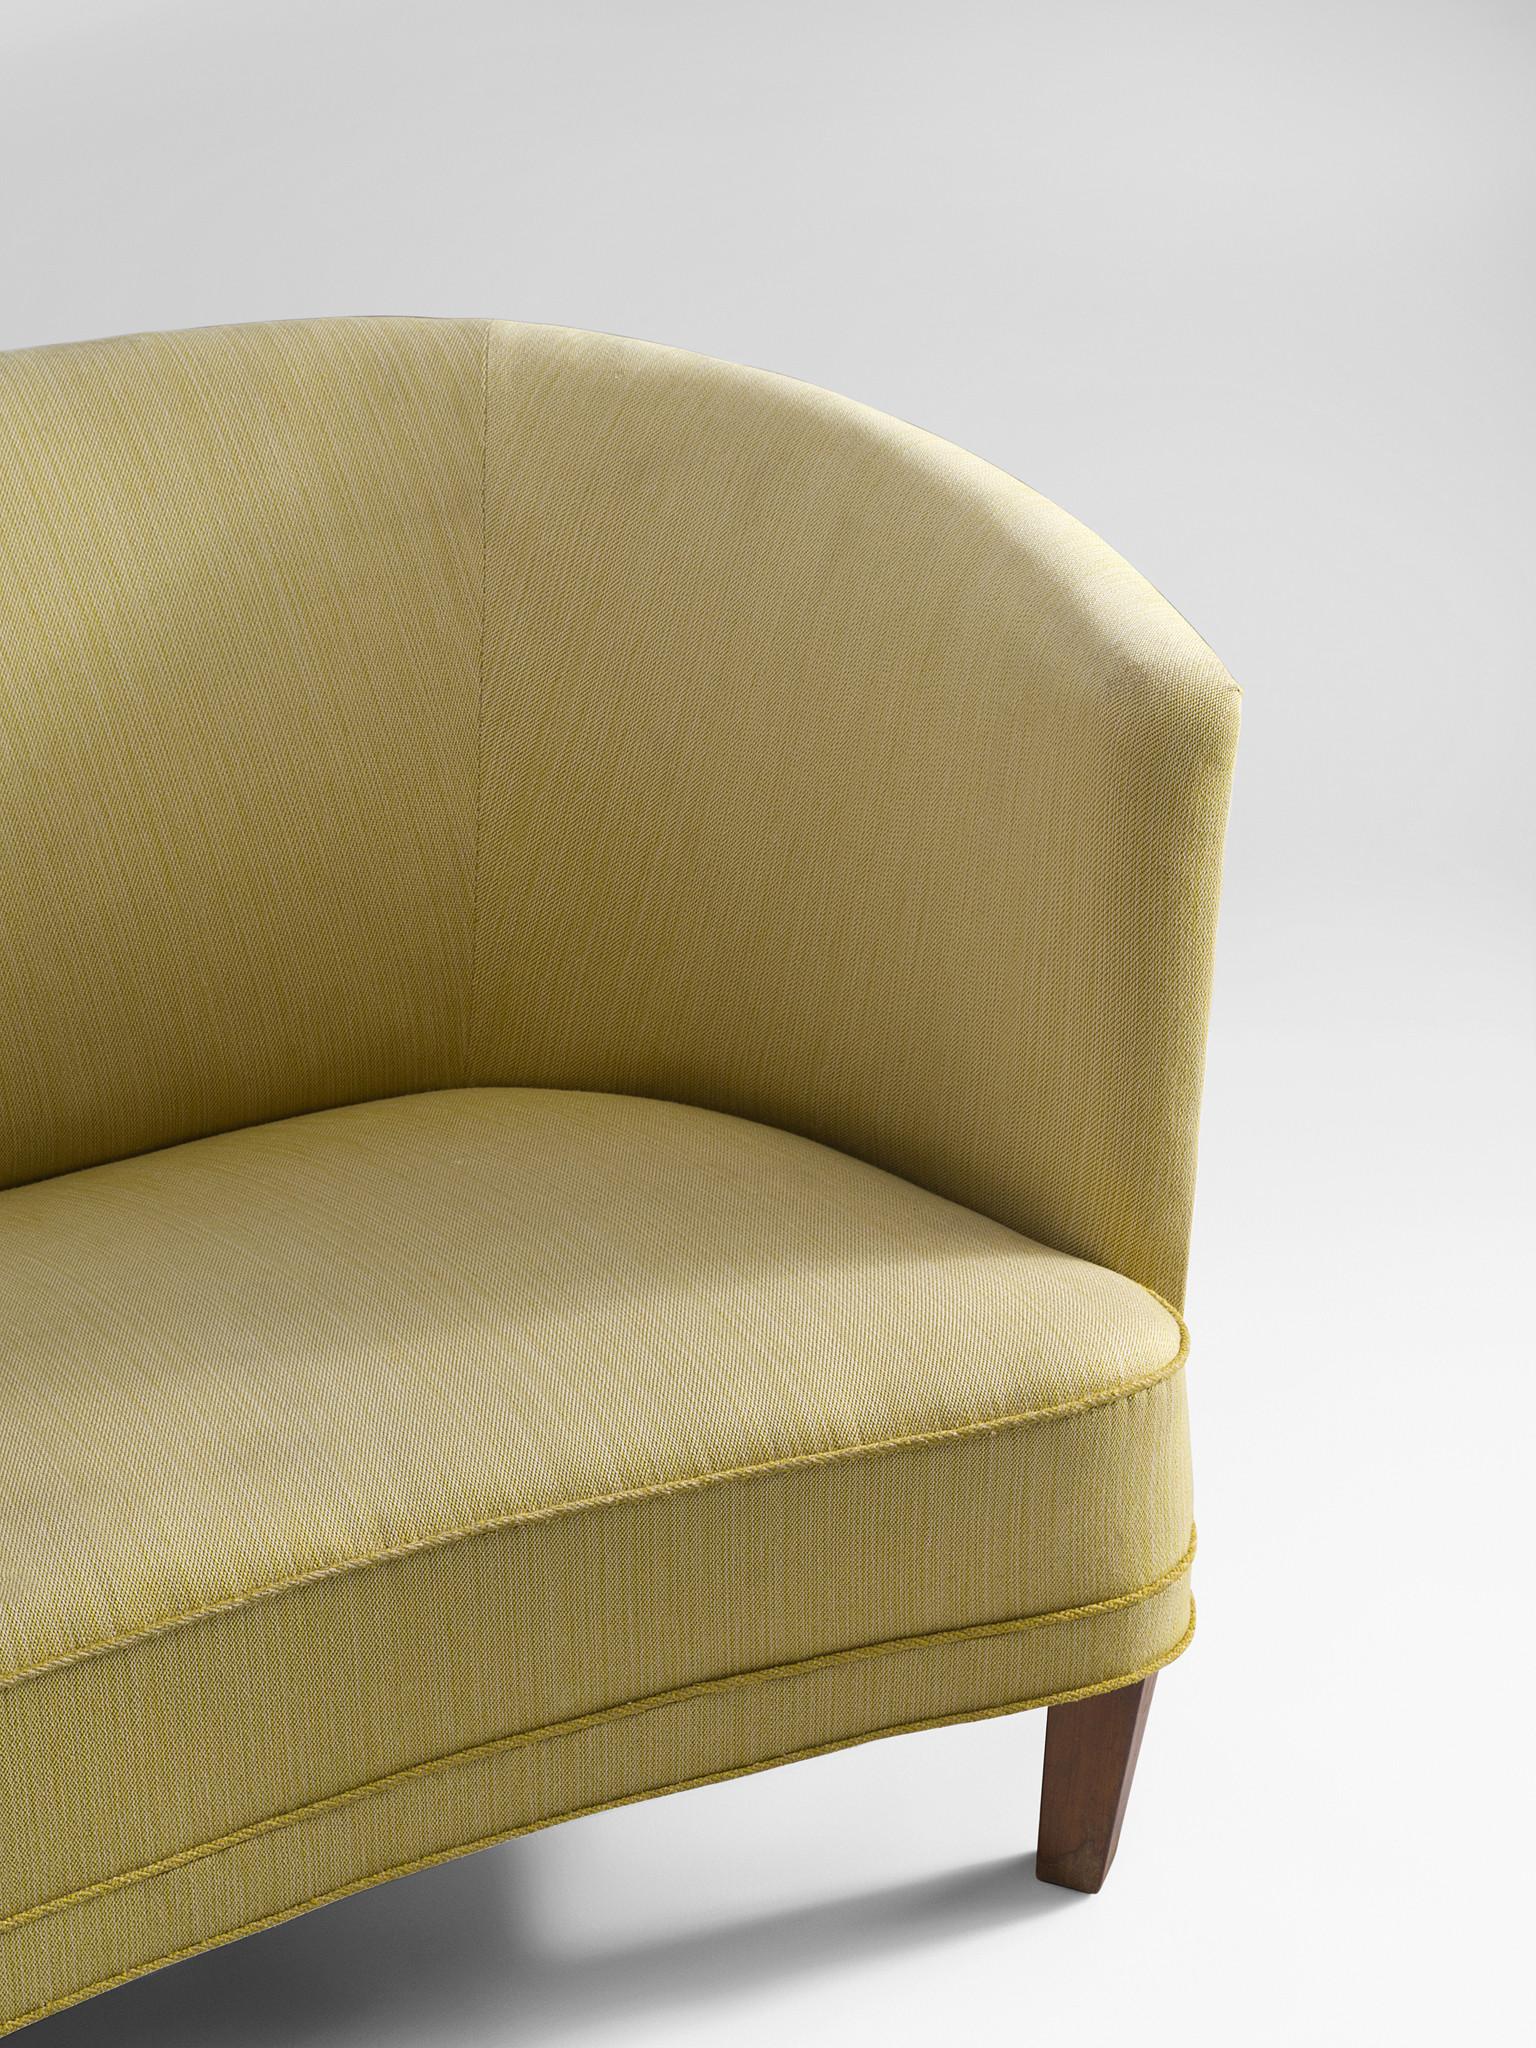 Fabric Danish Art Deco 'Banana' Sofa in Yellow Upholstery